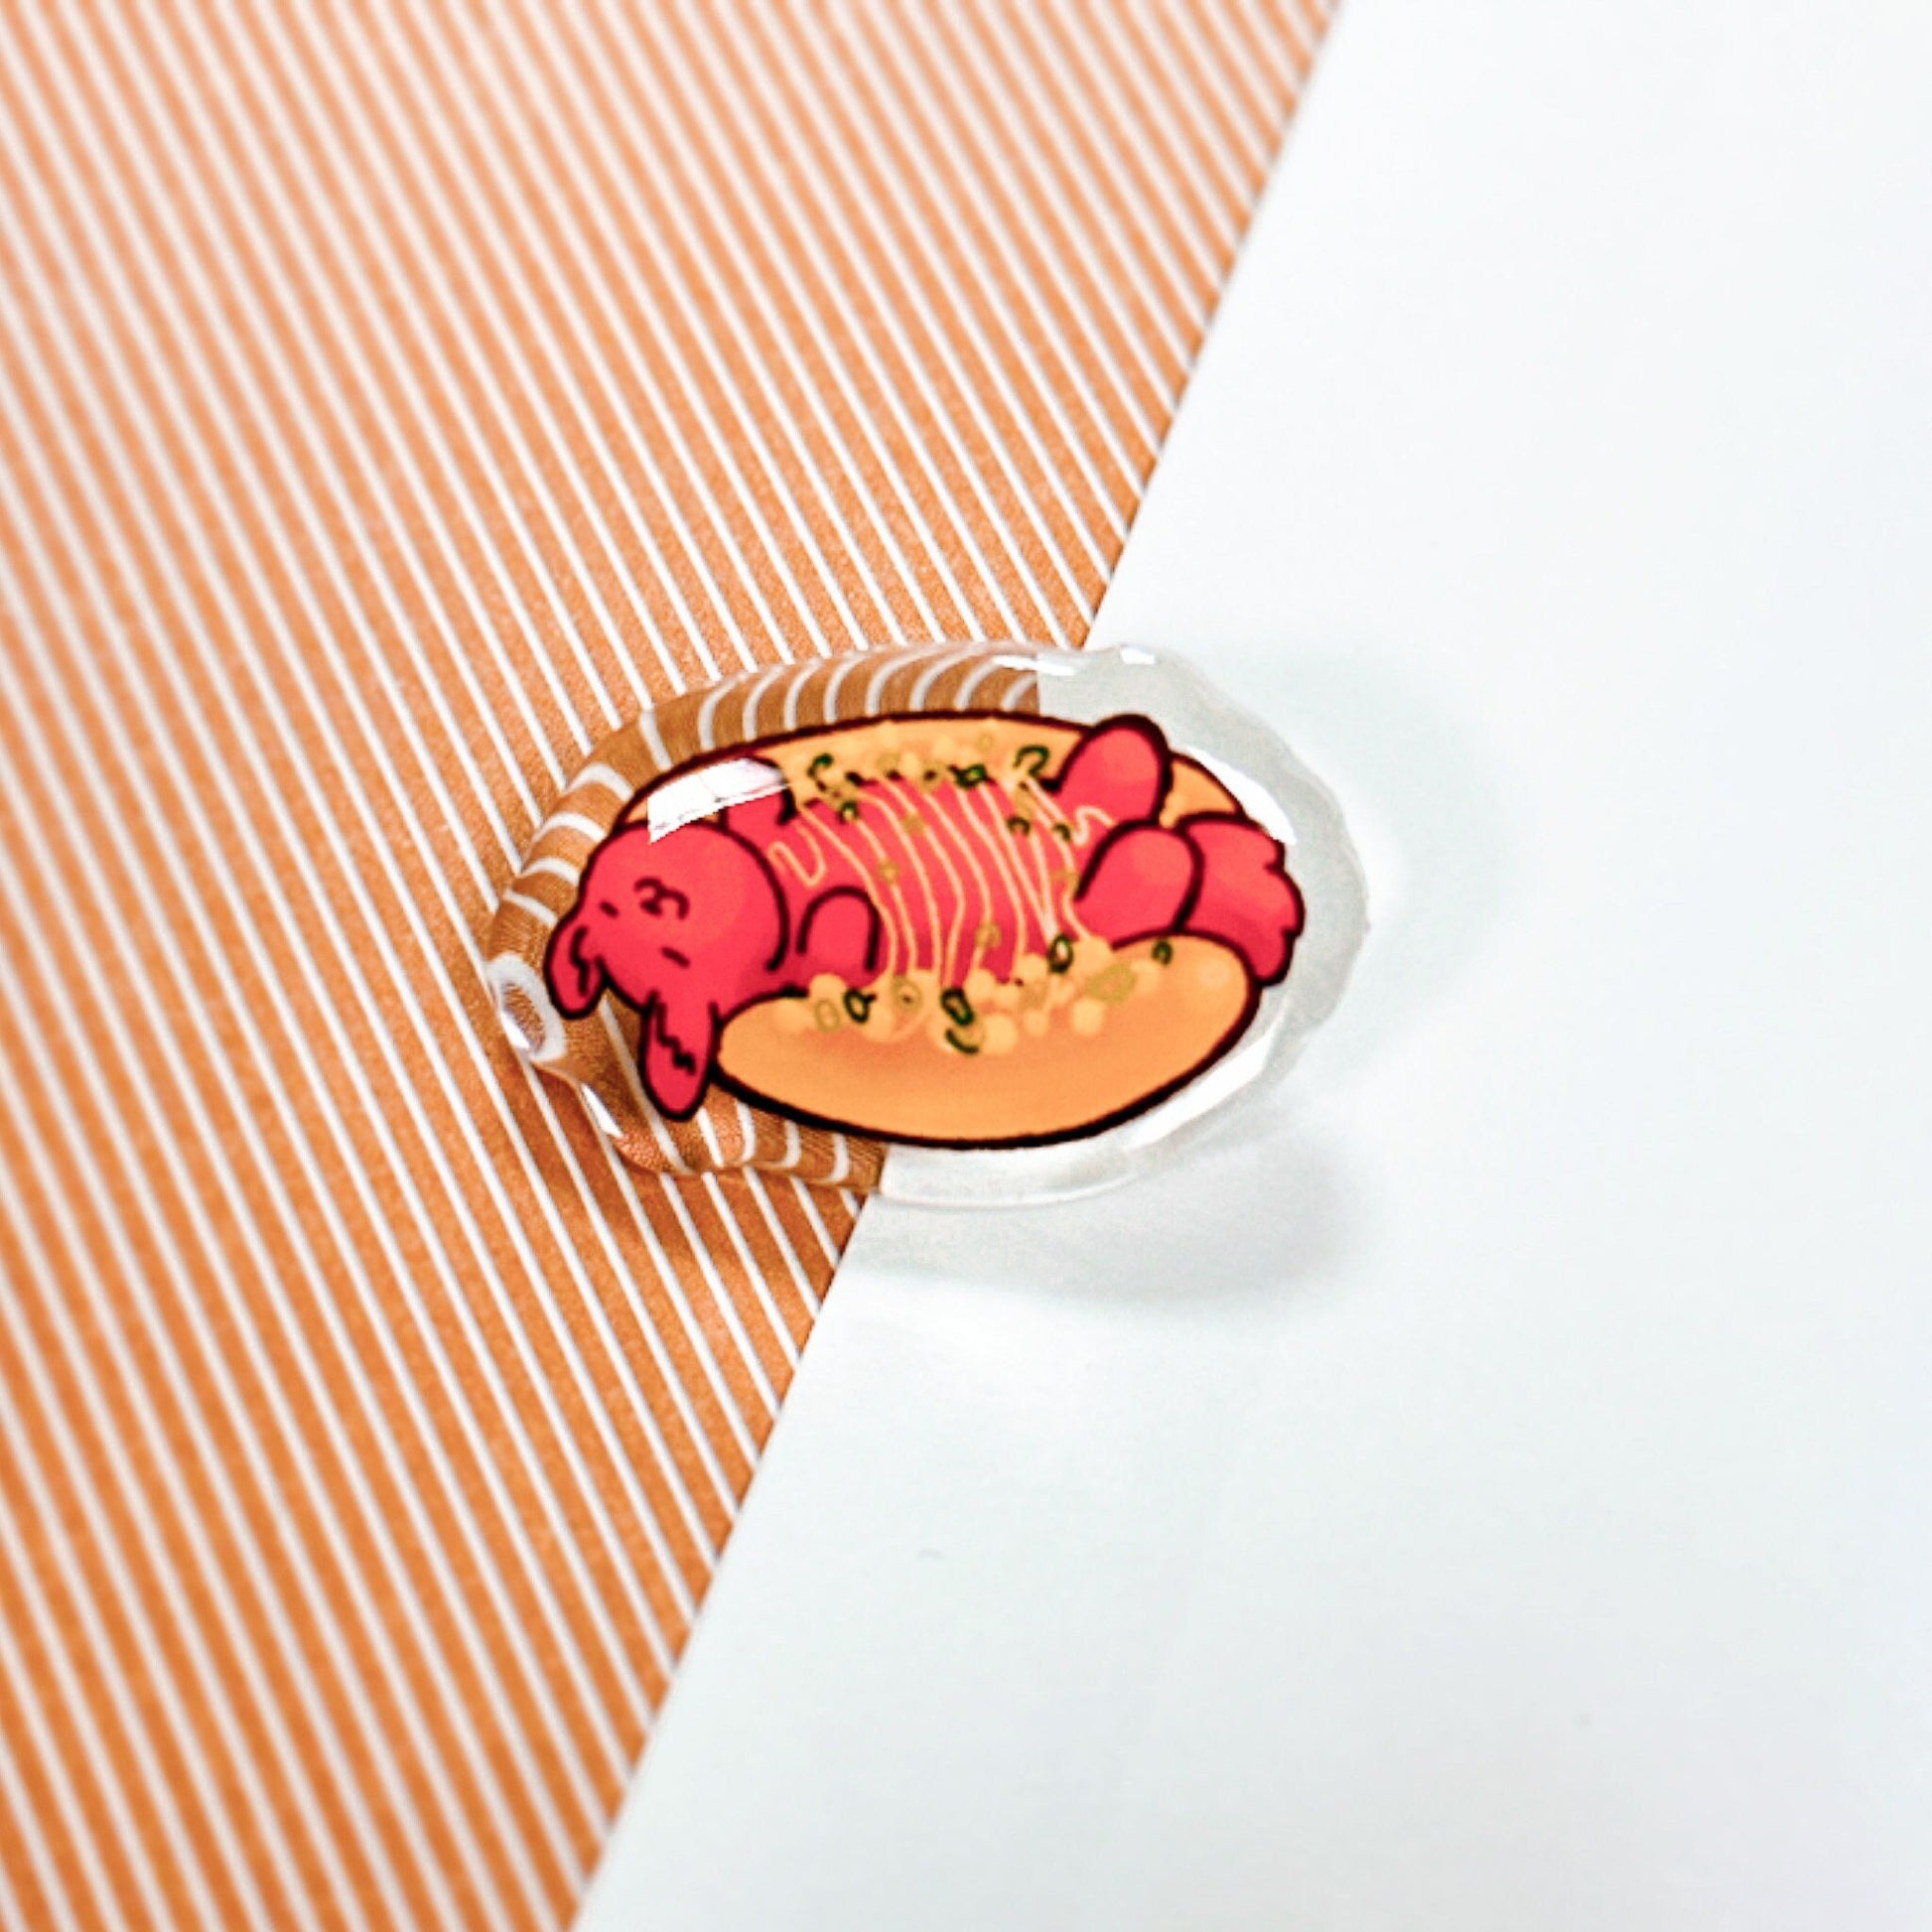 Cute Hot Dog Bun Relaxing Acrylic Pin